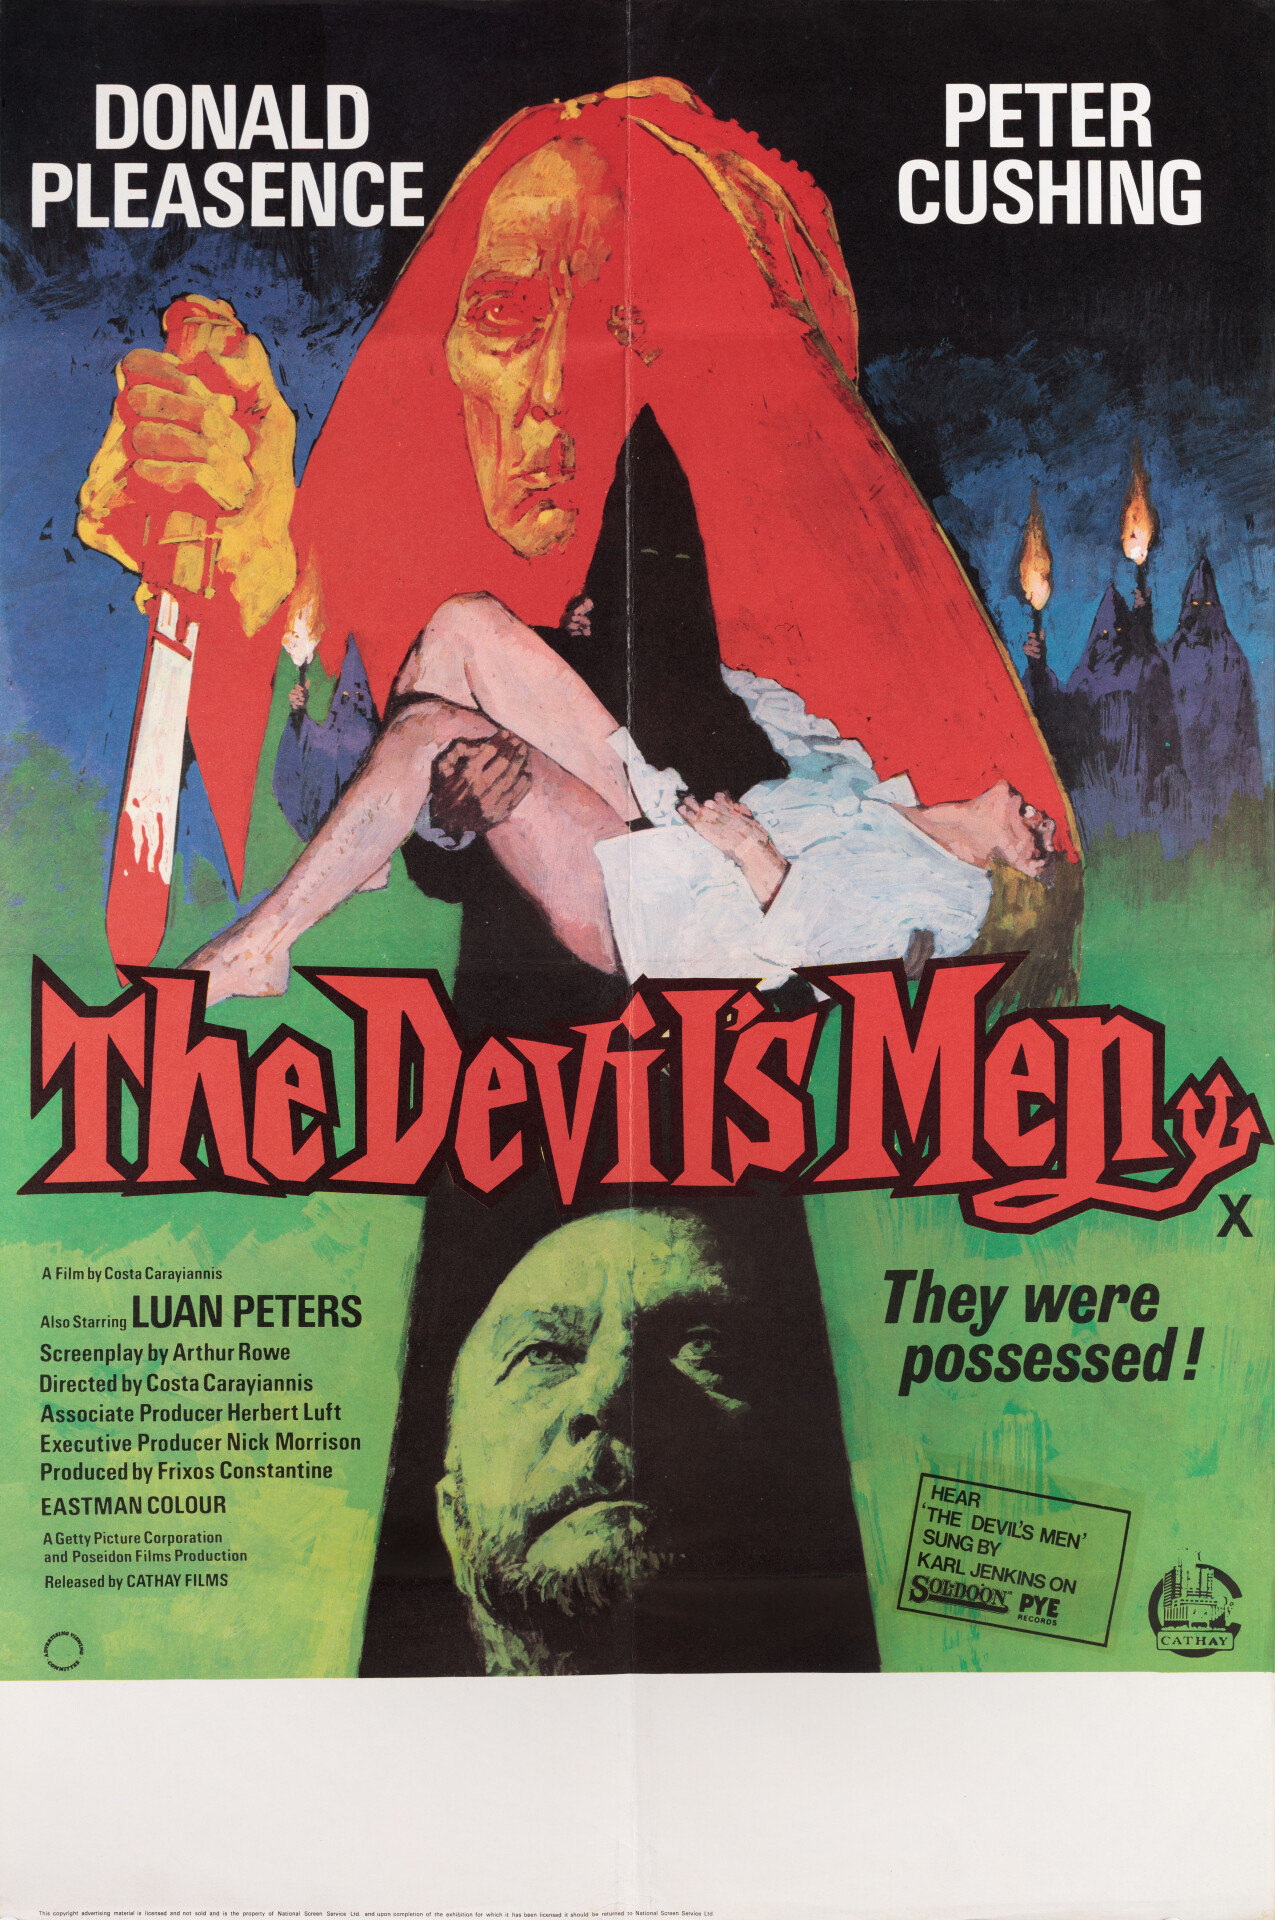 Земля минотавра (The Devils Men, 1976), режиссёр Костас Караяннис, британский постер к фильму (ужасы, 1979 год)